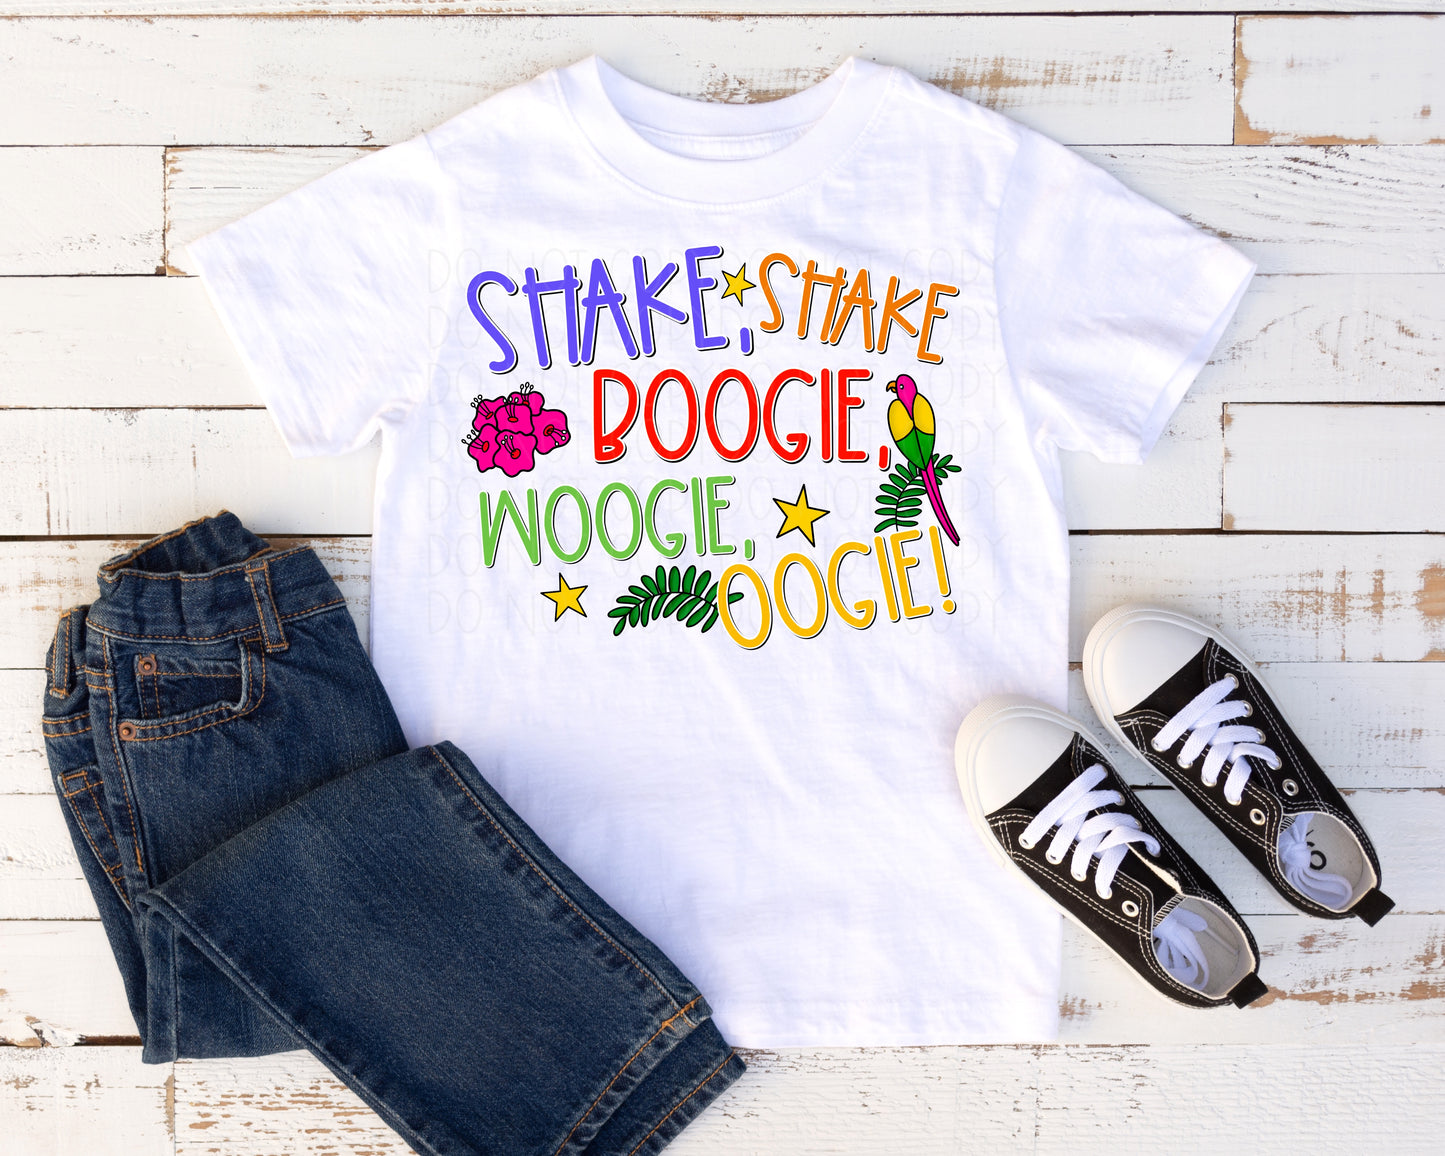 Shake Shake -Animal Boogie